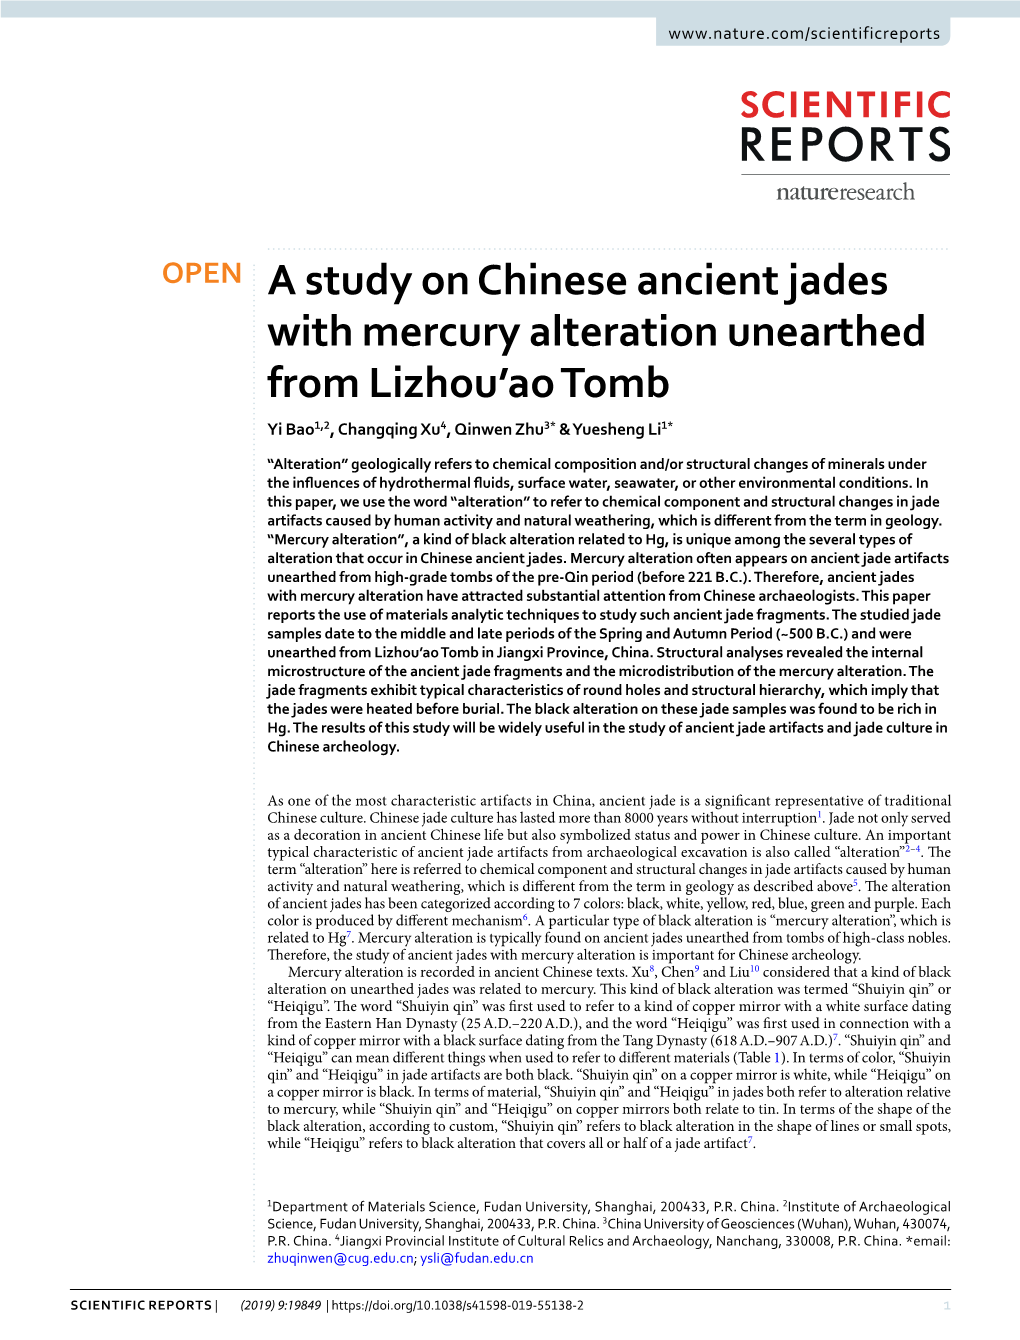 A Study on Chinese Ancient Jades with Mercury Alteration Unearthed from Lizhou’Ao Tomb Yi Bao1,2, Changqing Xu4, Qinwen Zhu3* & Yuesheng Li1*